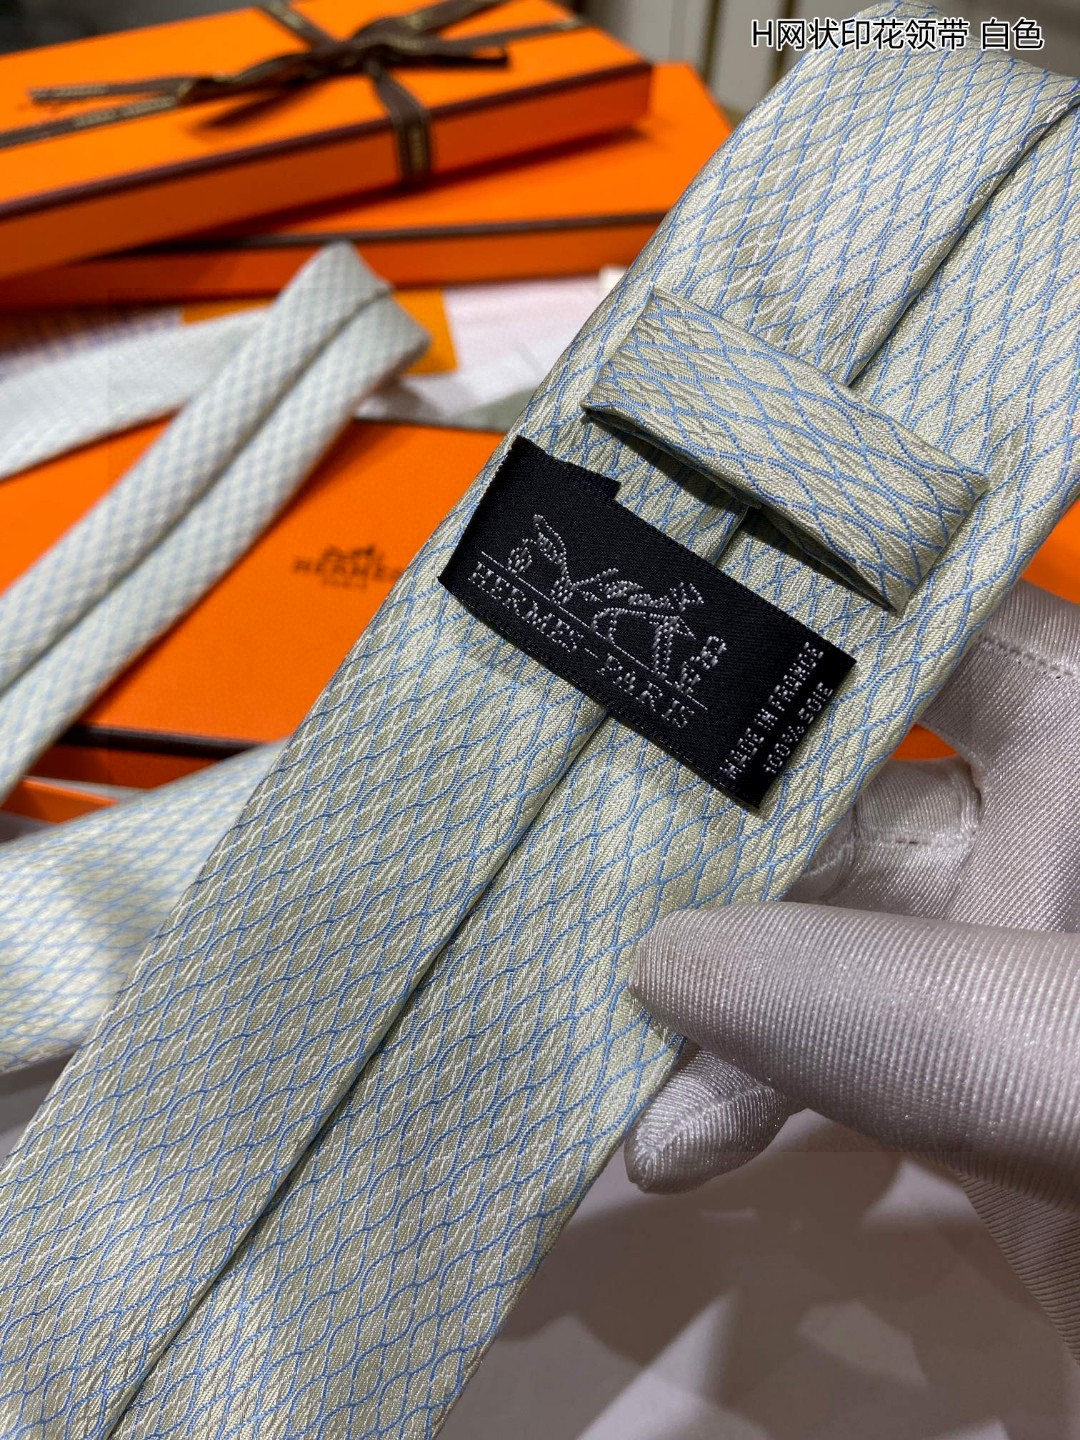 特价男士新款领带系列H网状印花领带稀有H家每年都有一千条不同印花的领带面世从最初的多以几何图案表现骑术活